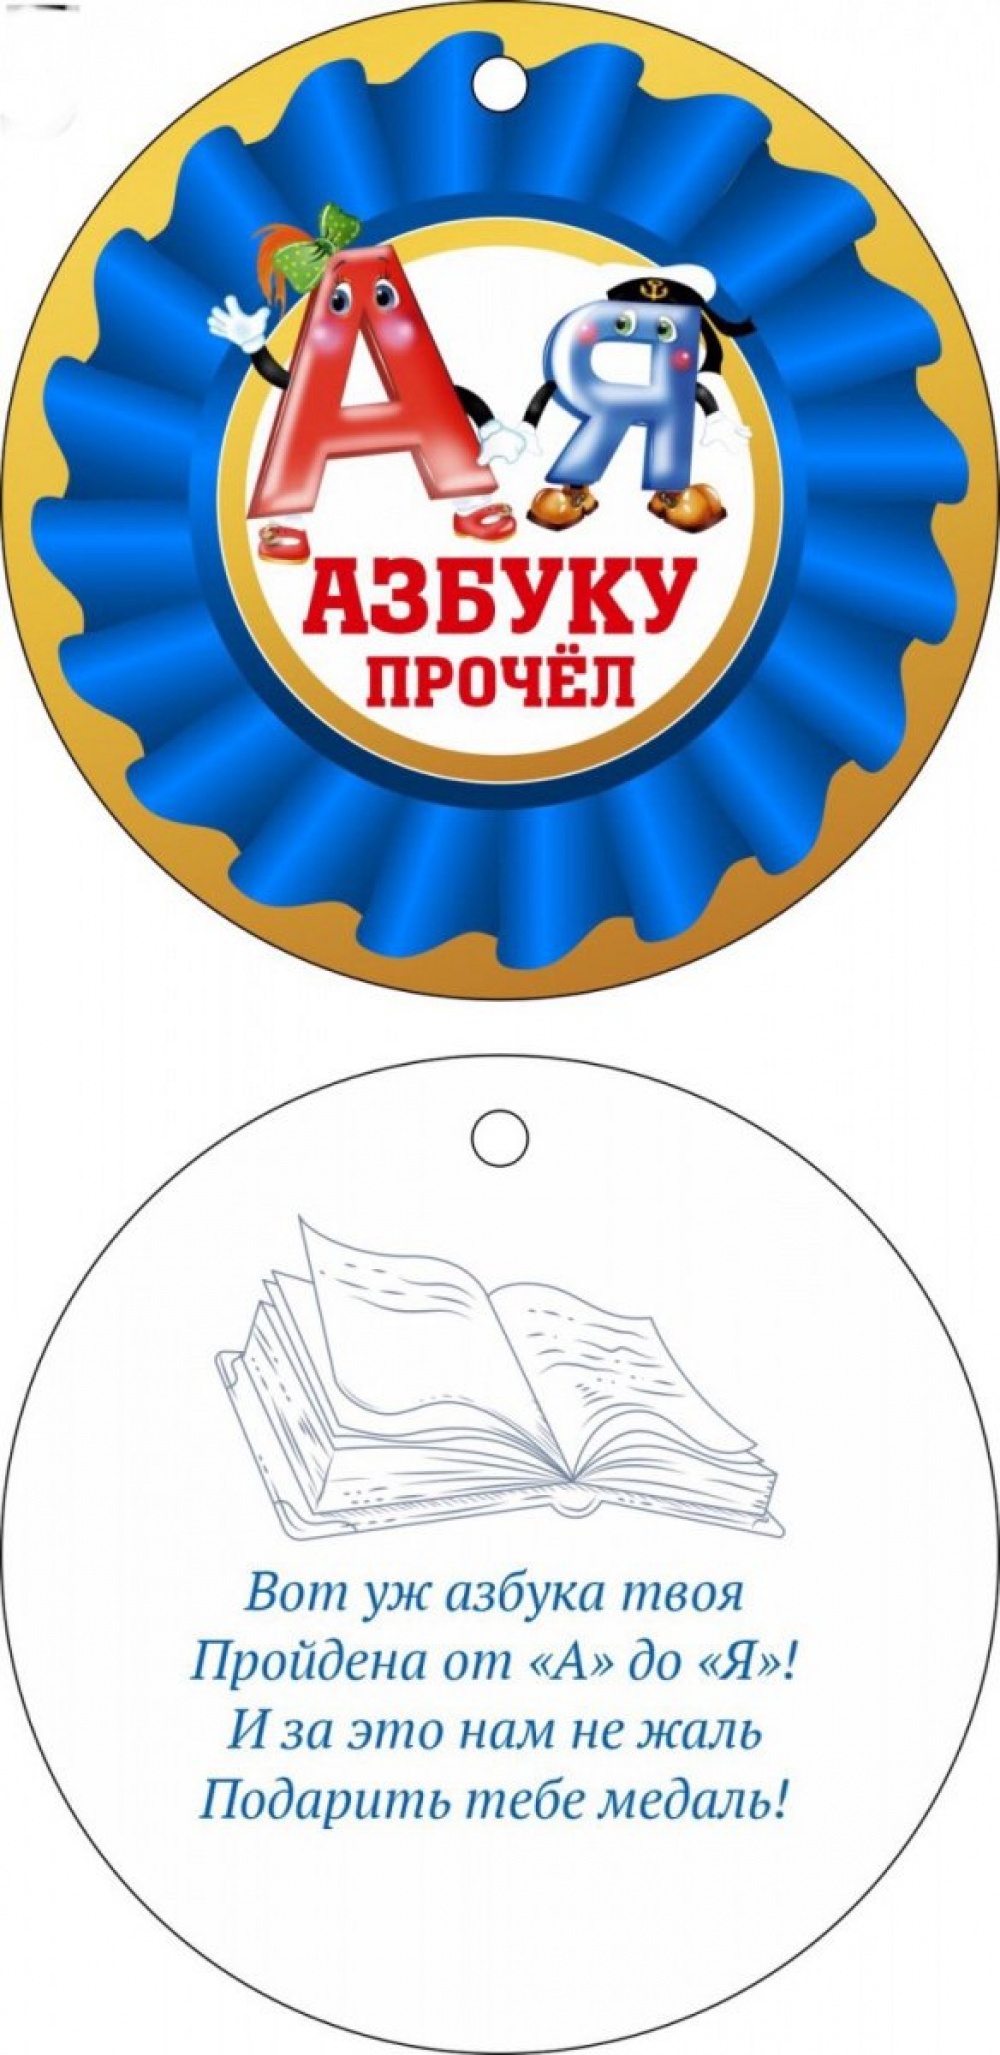 Медаль Азбуку прочёл